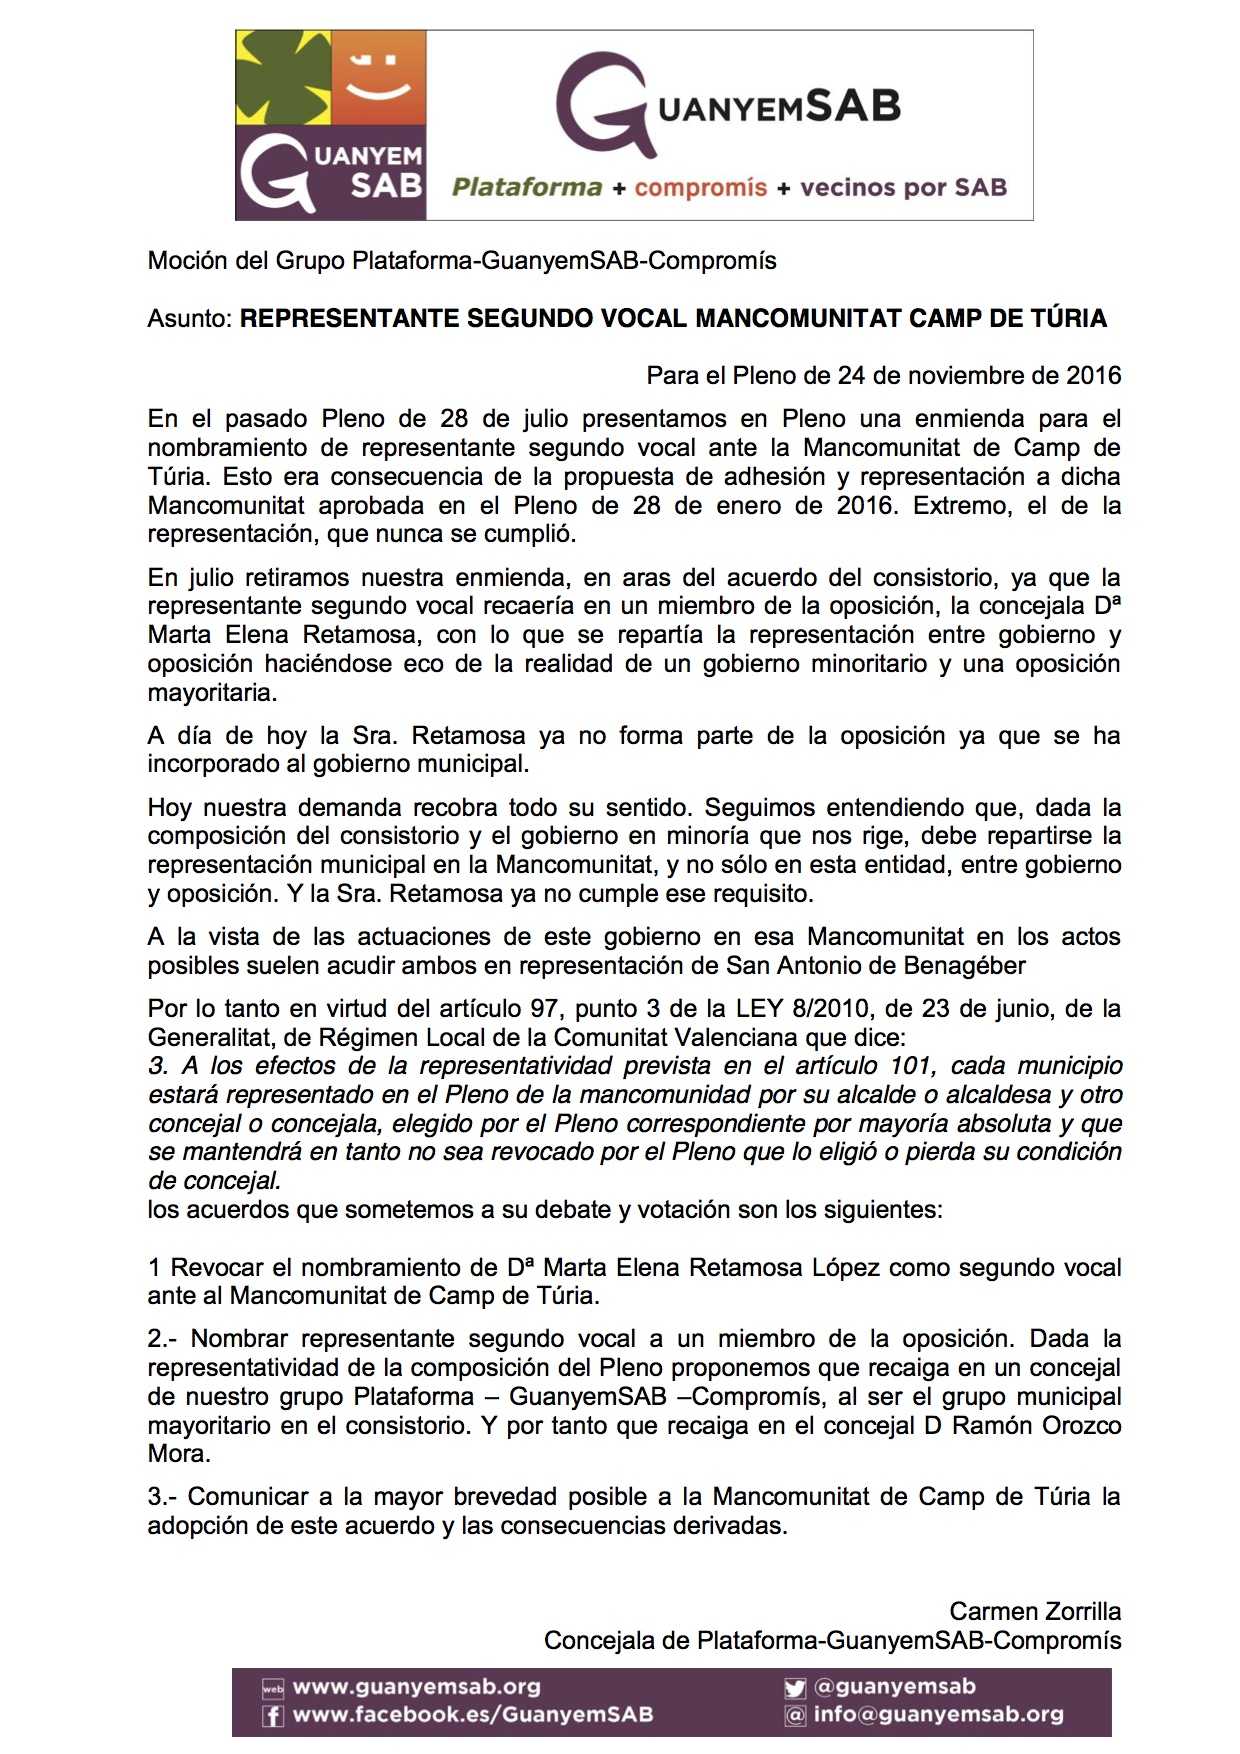 06-mocion-propuesta-representante-suplente-mancomunitat-camp-turia-nov-2016